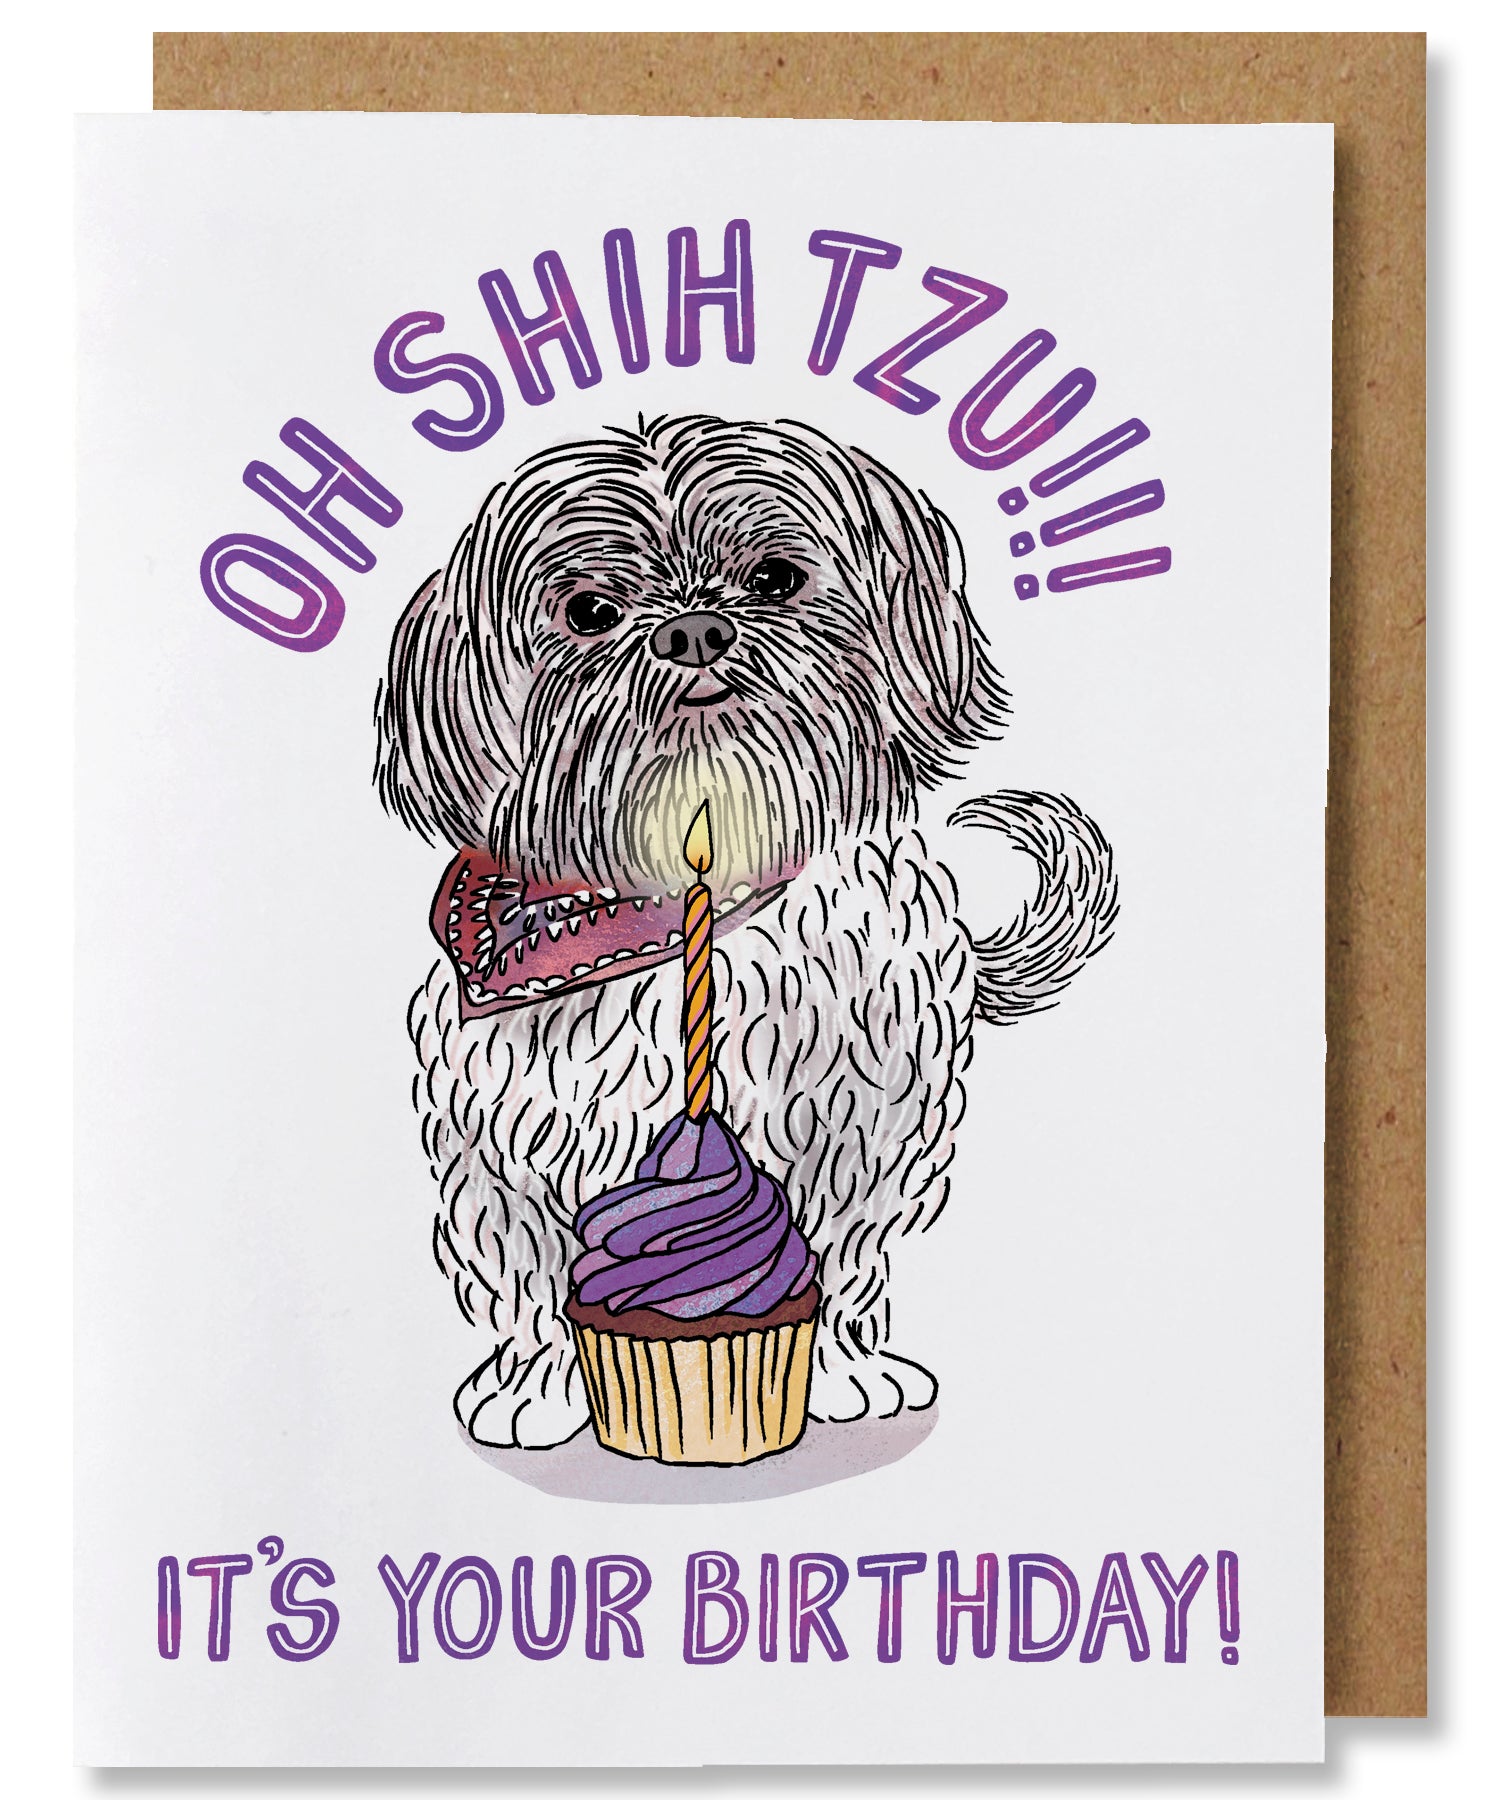  Funny Birthday Card. I Got You A Birthday Cod. Punny